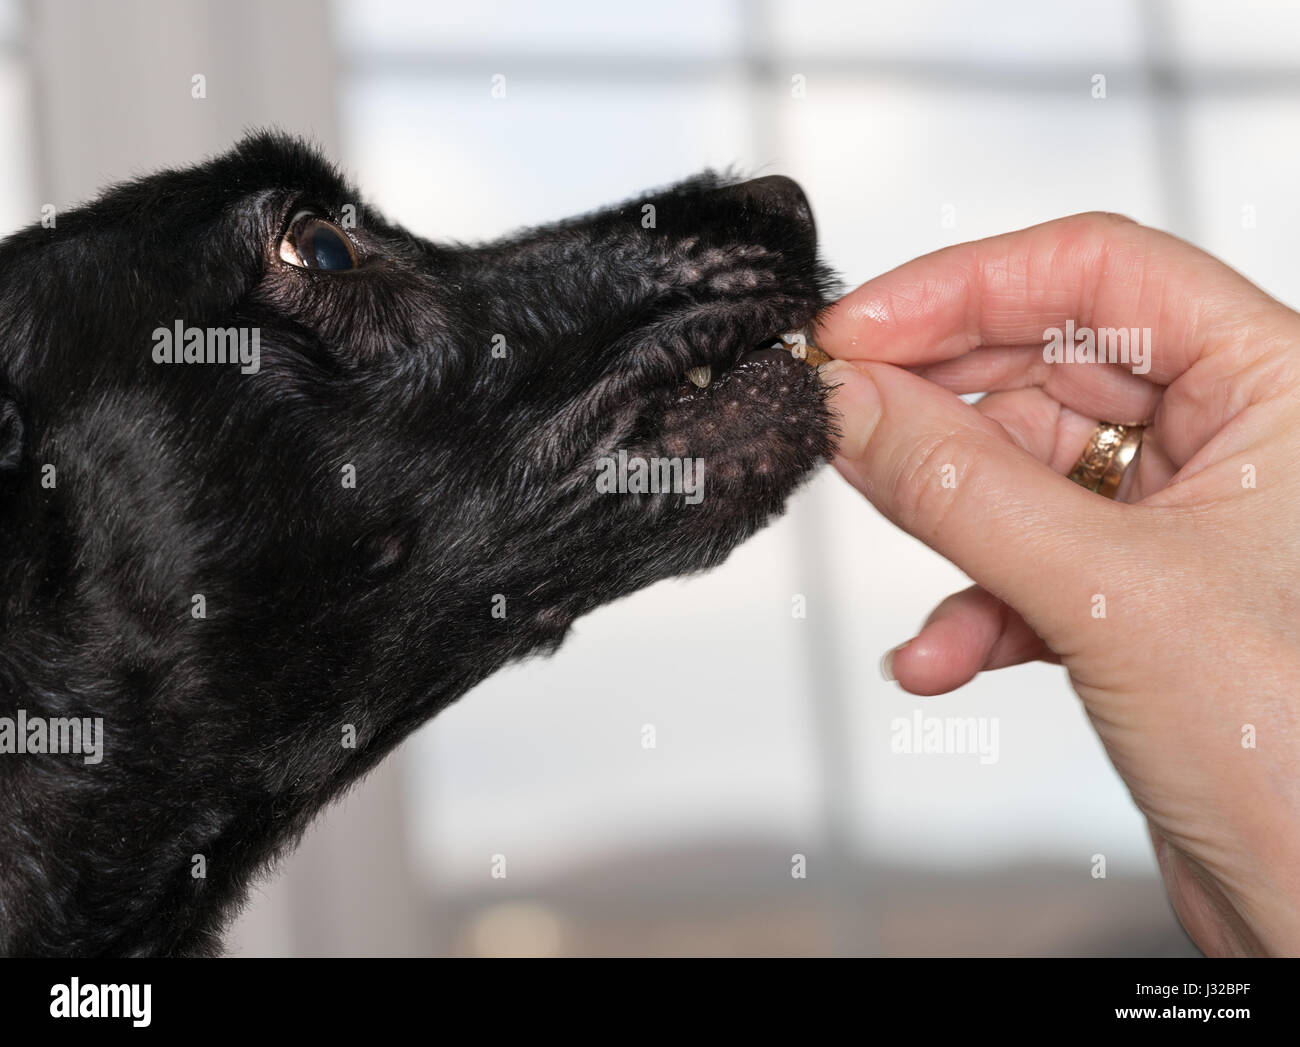 Feeding a dog a treat Stock Photo